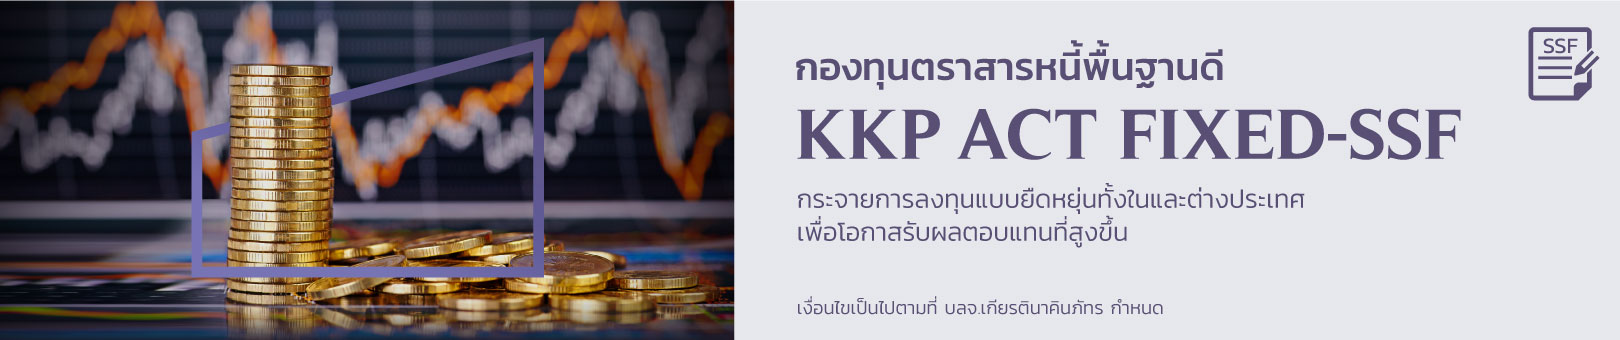 KKP-ACT-FIXED_1620x340-SSF